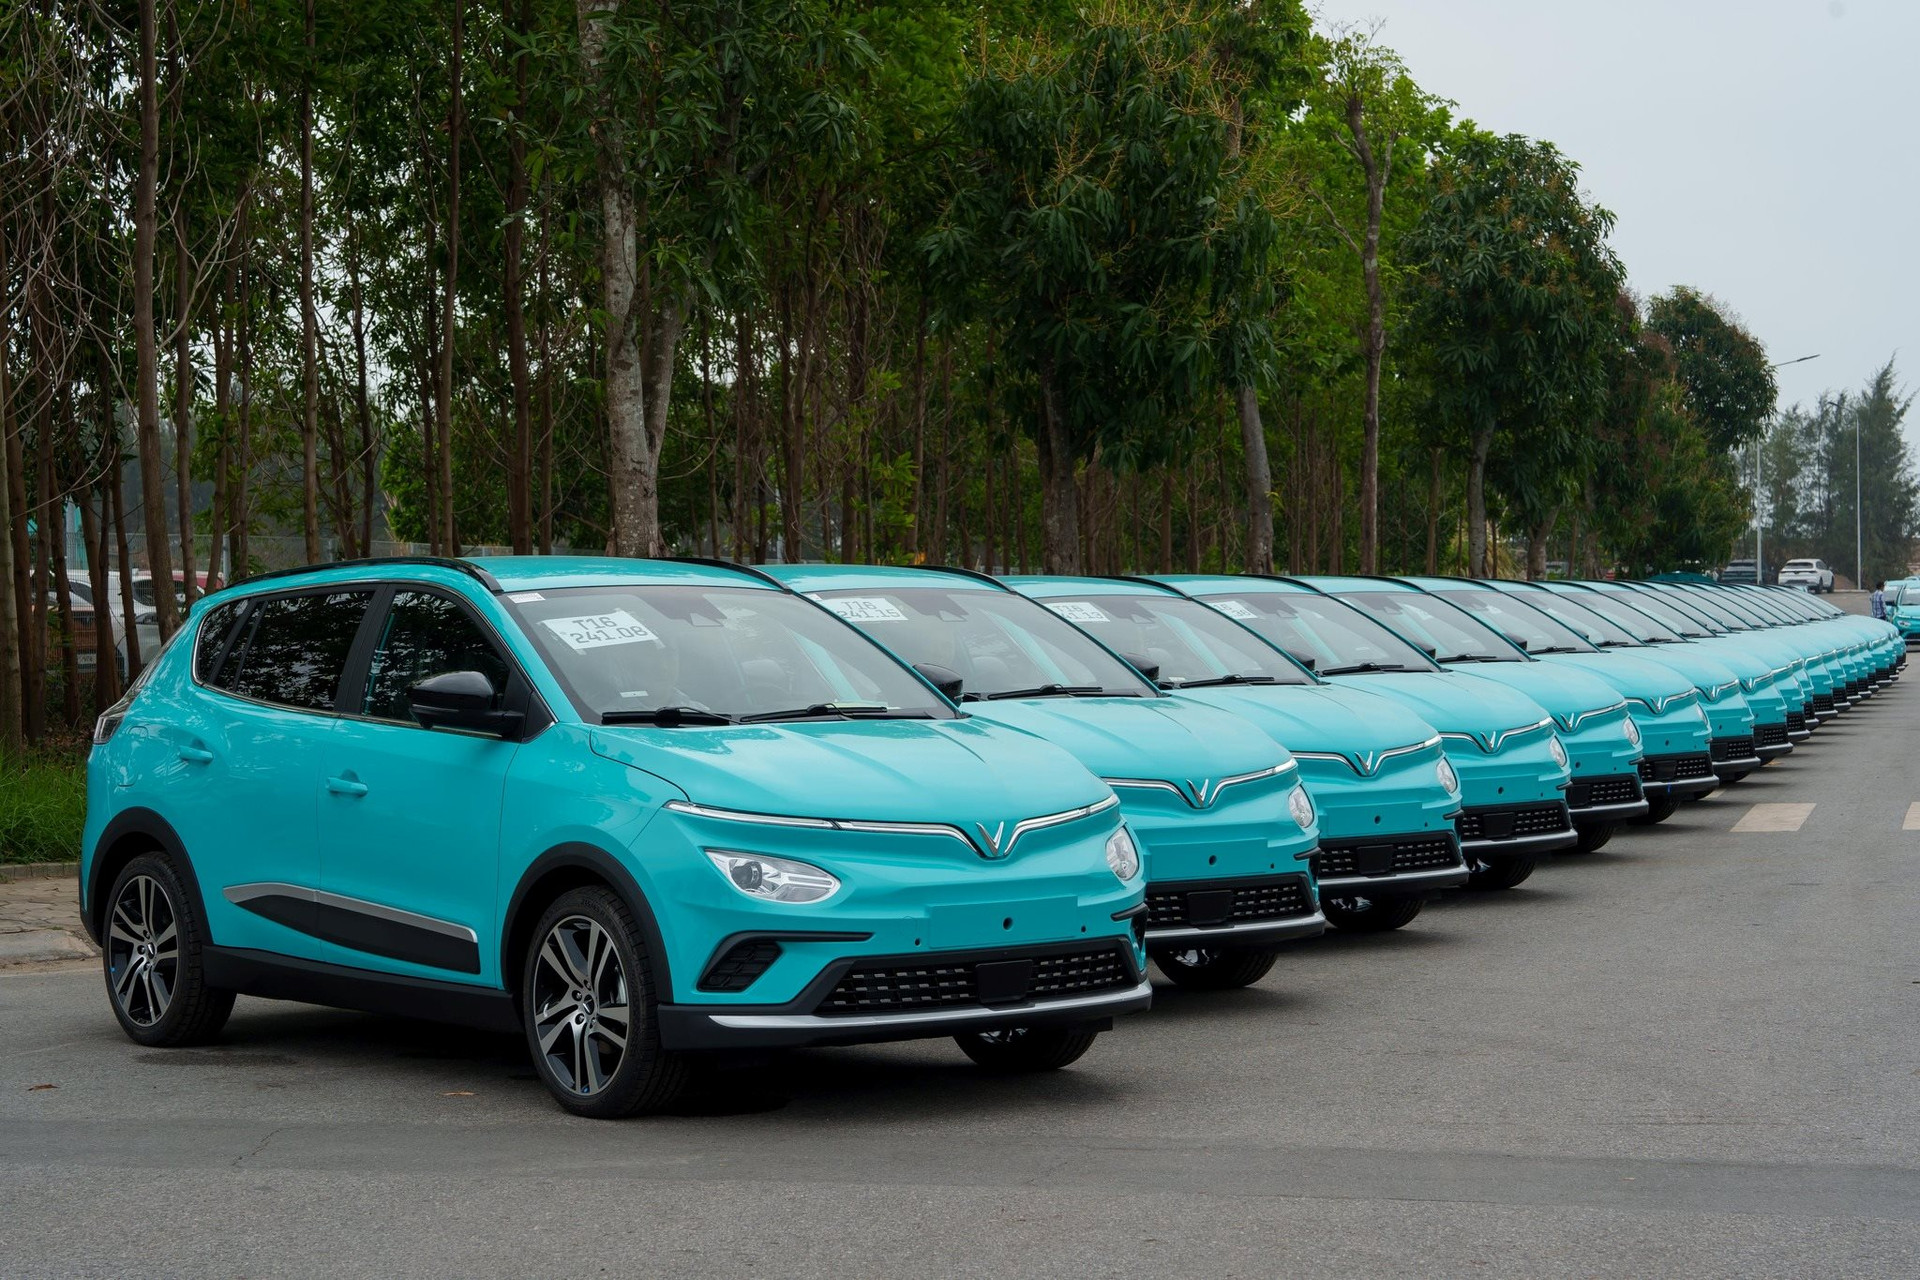 Công ty taxi điện của ông Phạm Nhật Vượng tìm đối tác tài xế Greencar Luxury VF8: Lương gần 14 triệu đồng, có khả năng nói tiếng Anh và cao từ 1m70 trở lên - Ảnh 1.